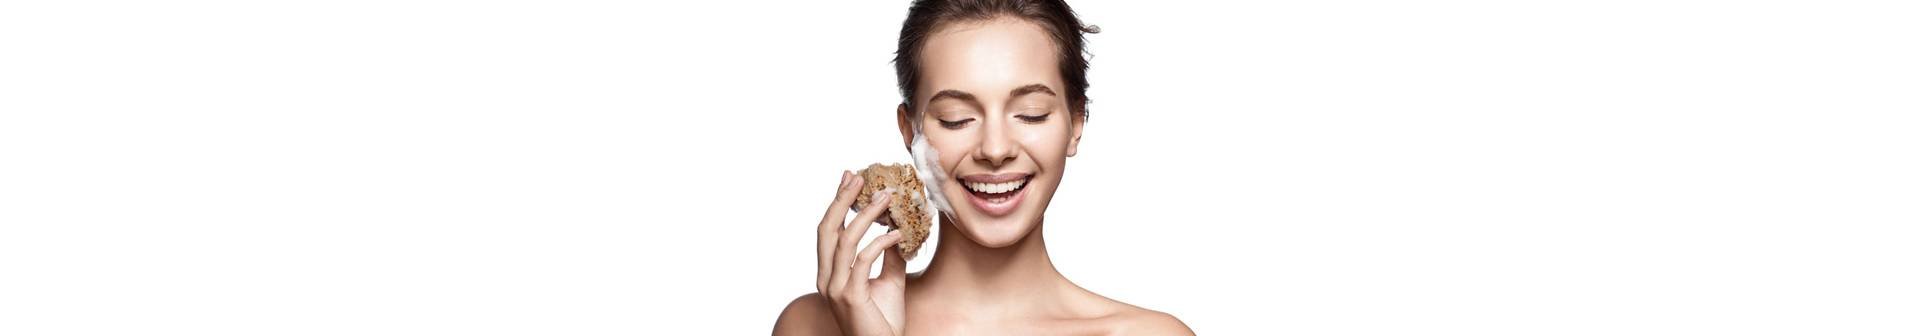 Quel produit utiliser pour nettoyer une peau à tendance acnéique ? Découvrez 5 nettoyants pour visage et sélectionnez celui qui répond le mieux à vos besoins.